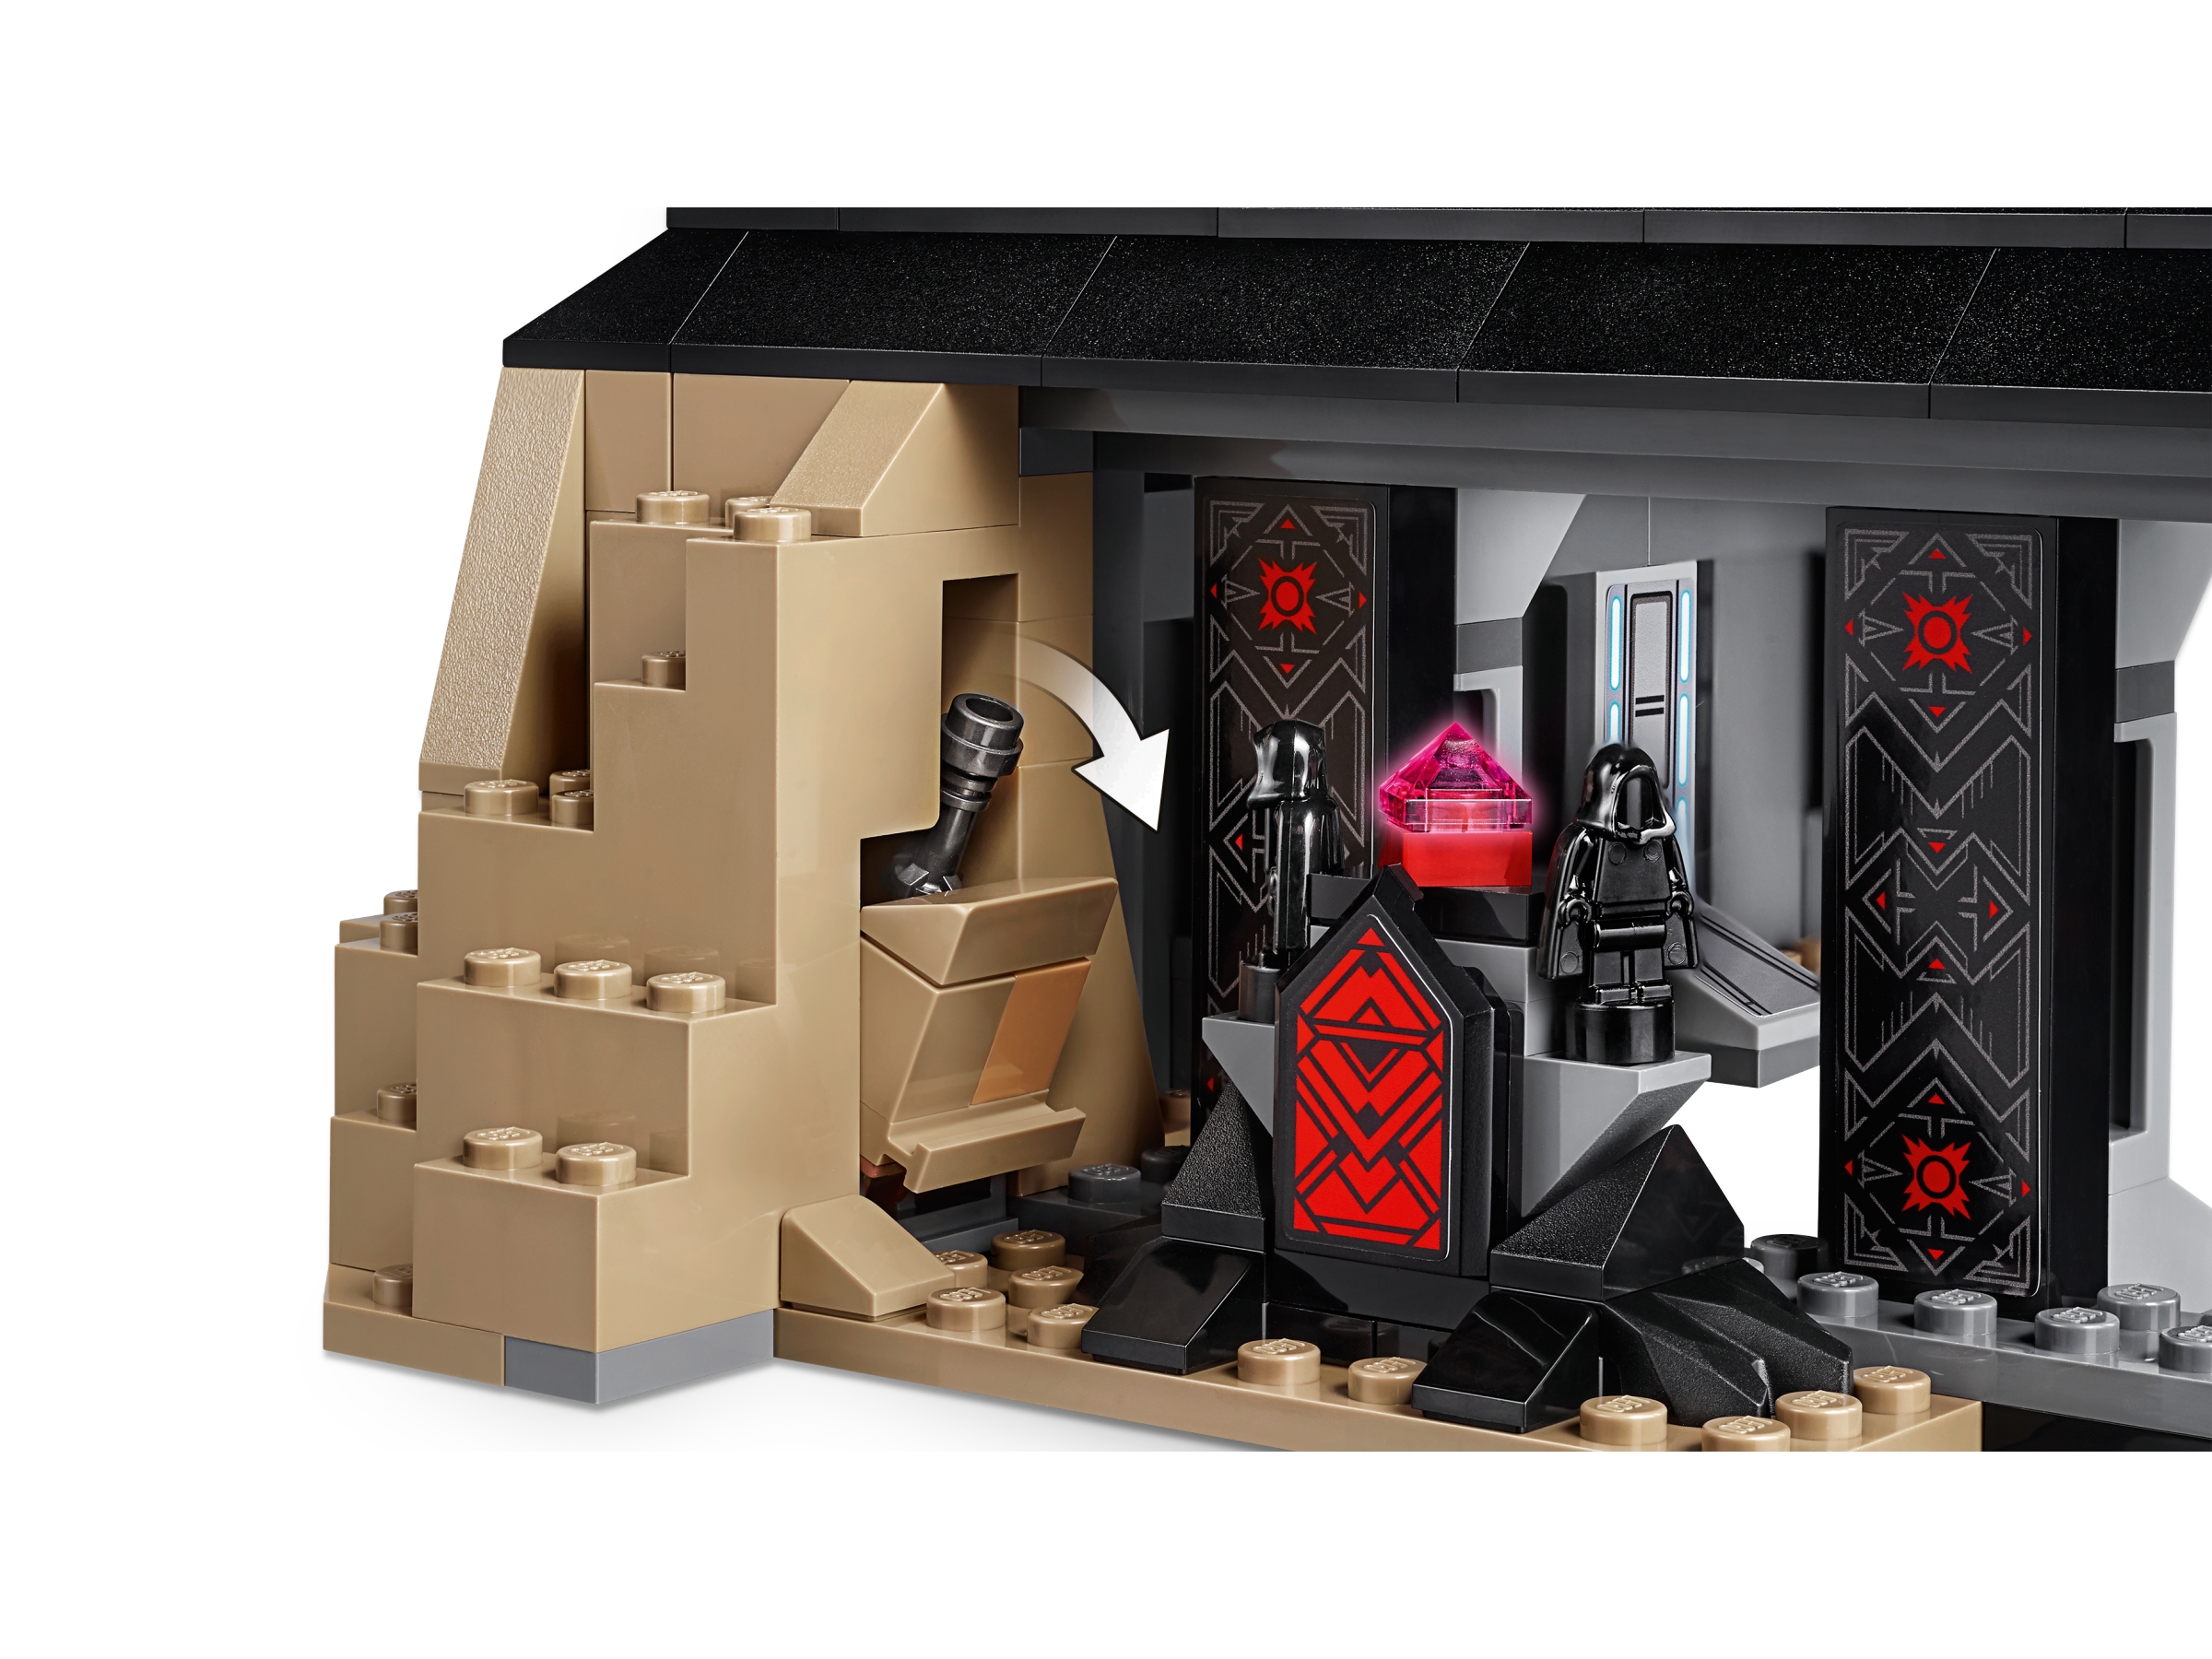 darth vader's castle lego set